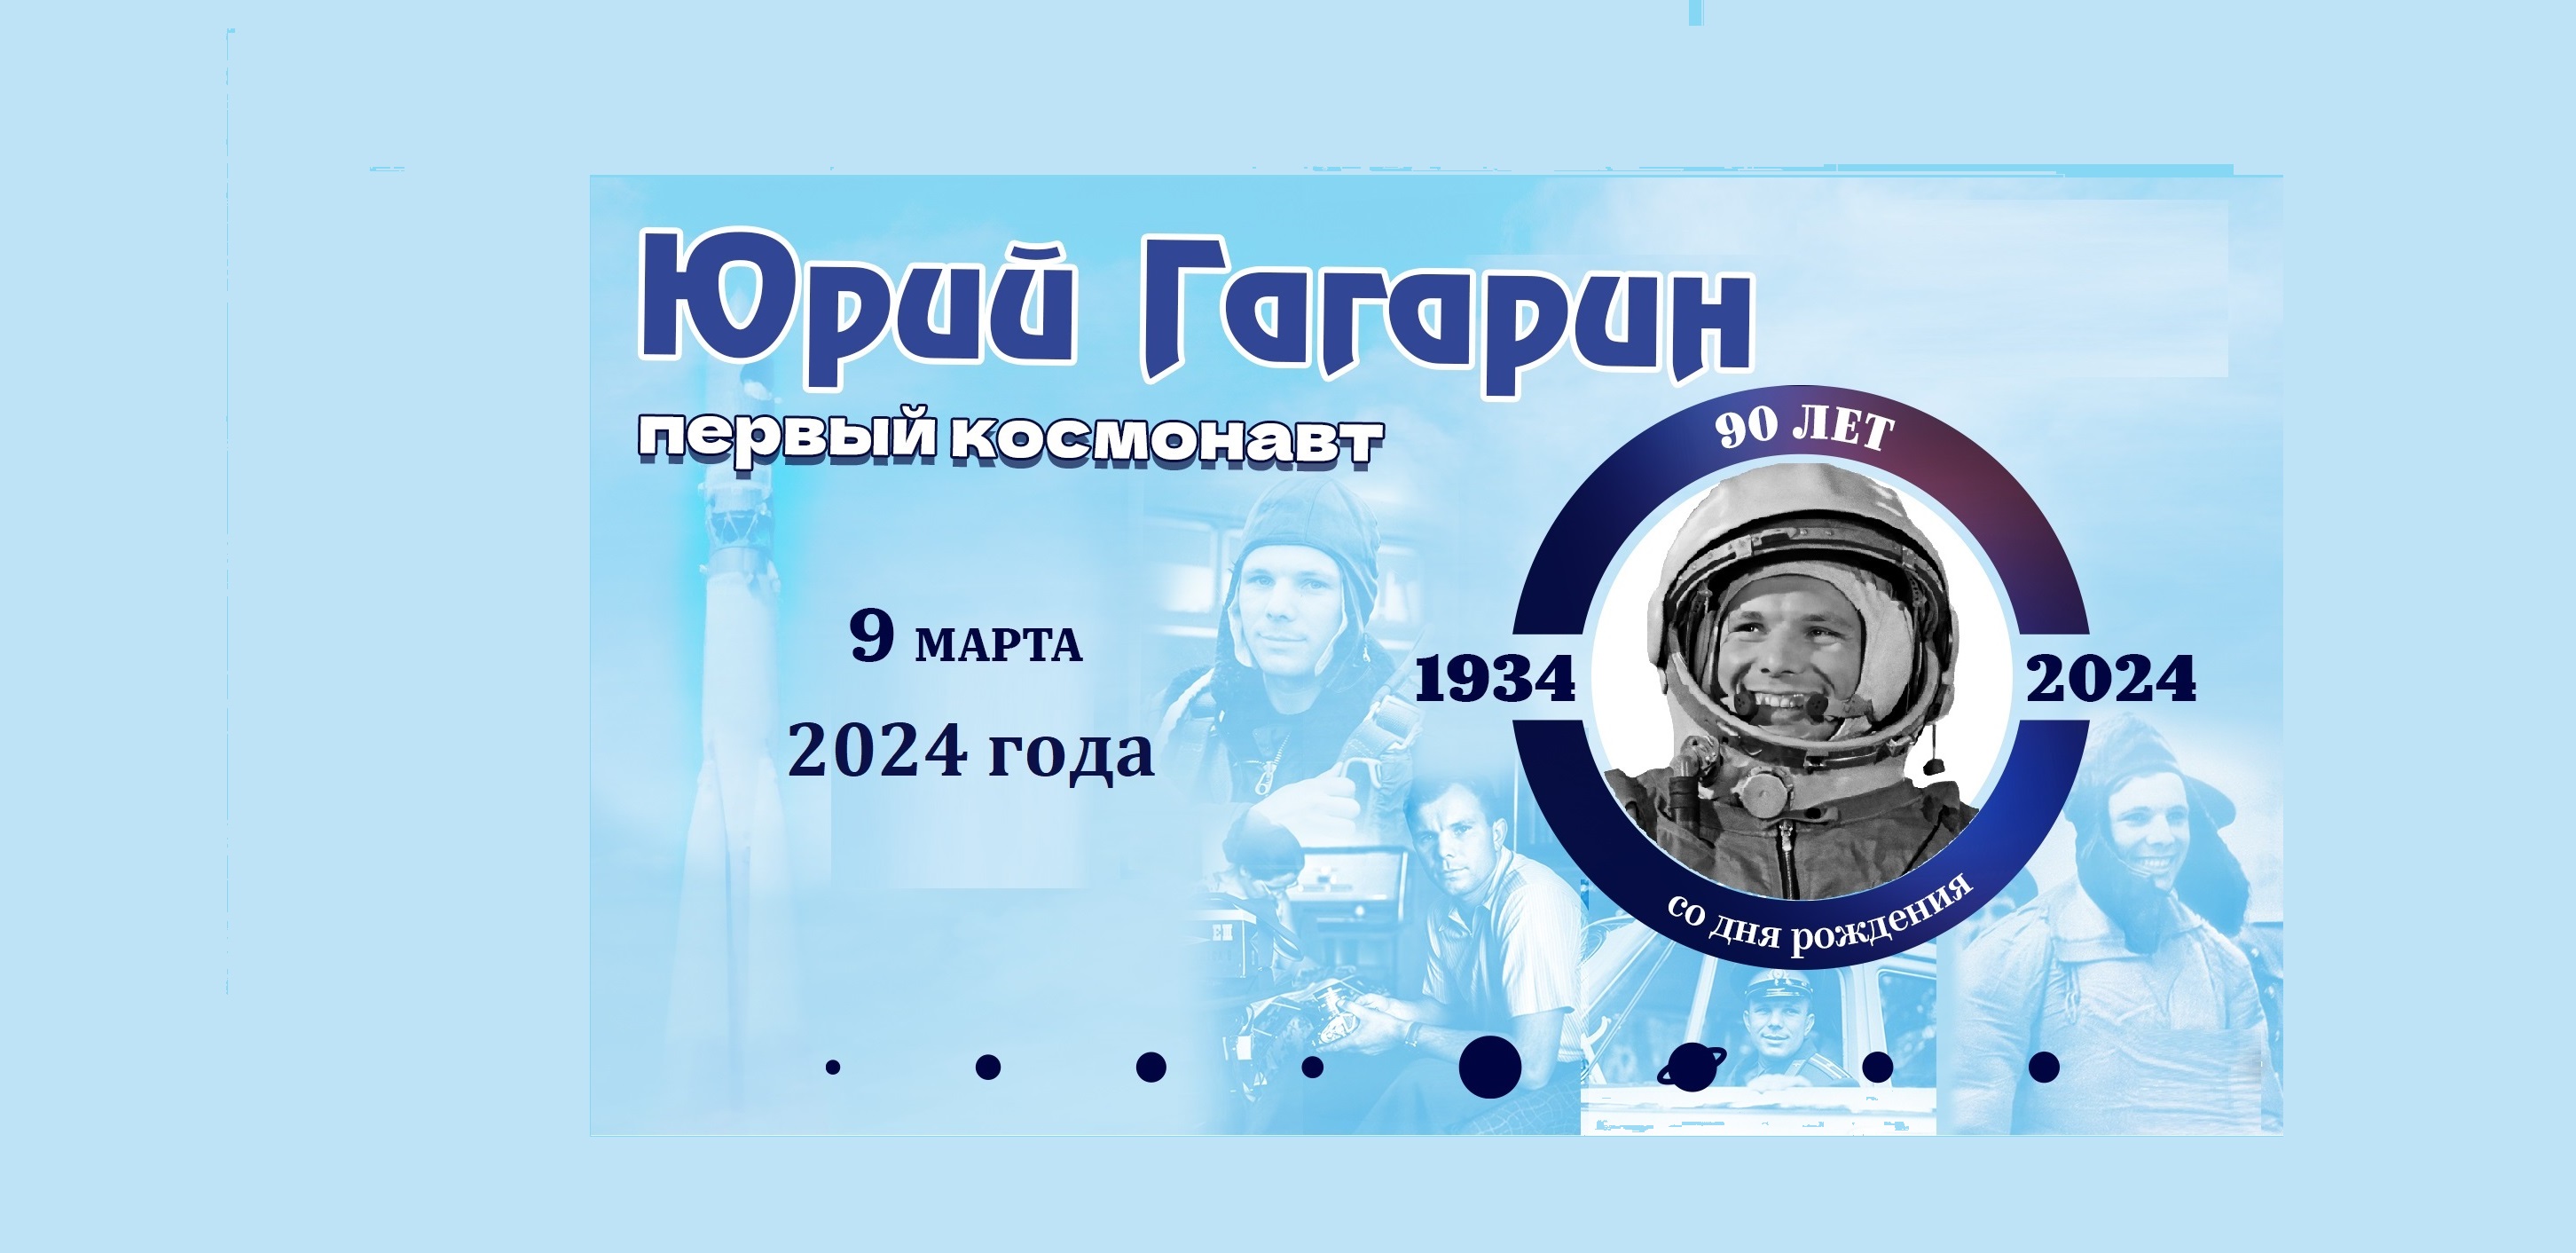 90-летие со дня рождения космонавта Ю. А. Гагарина.